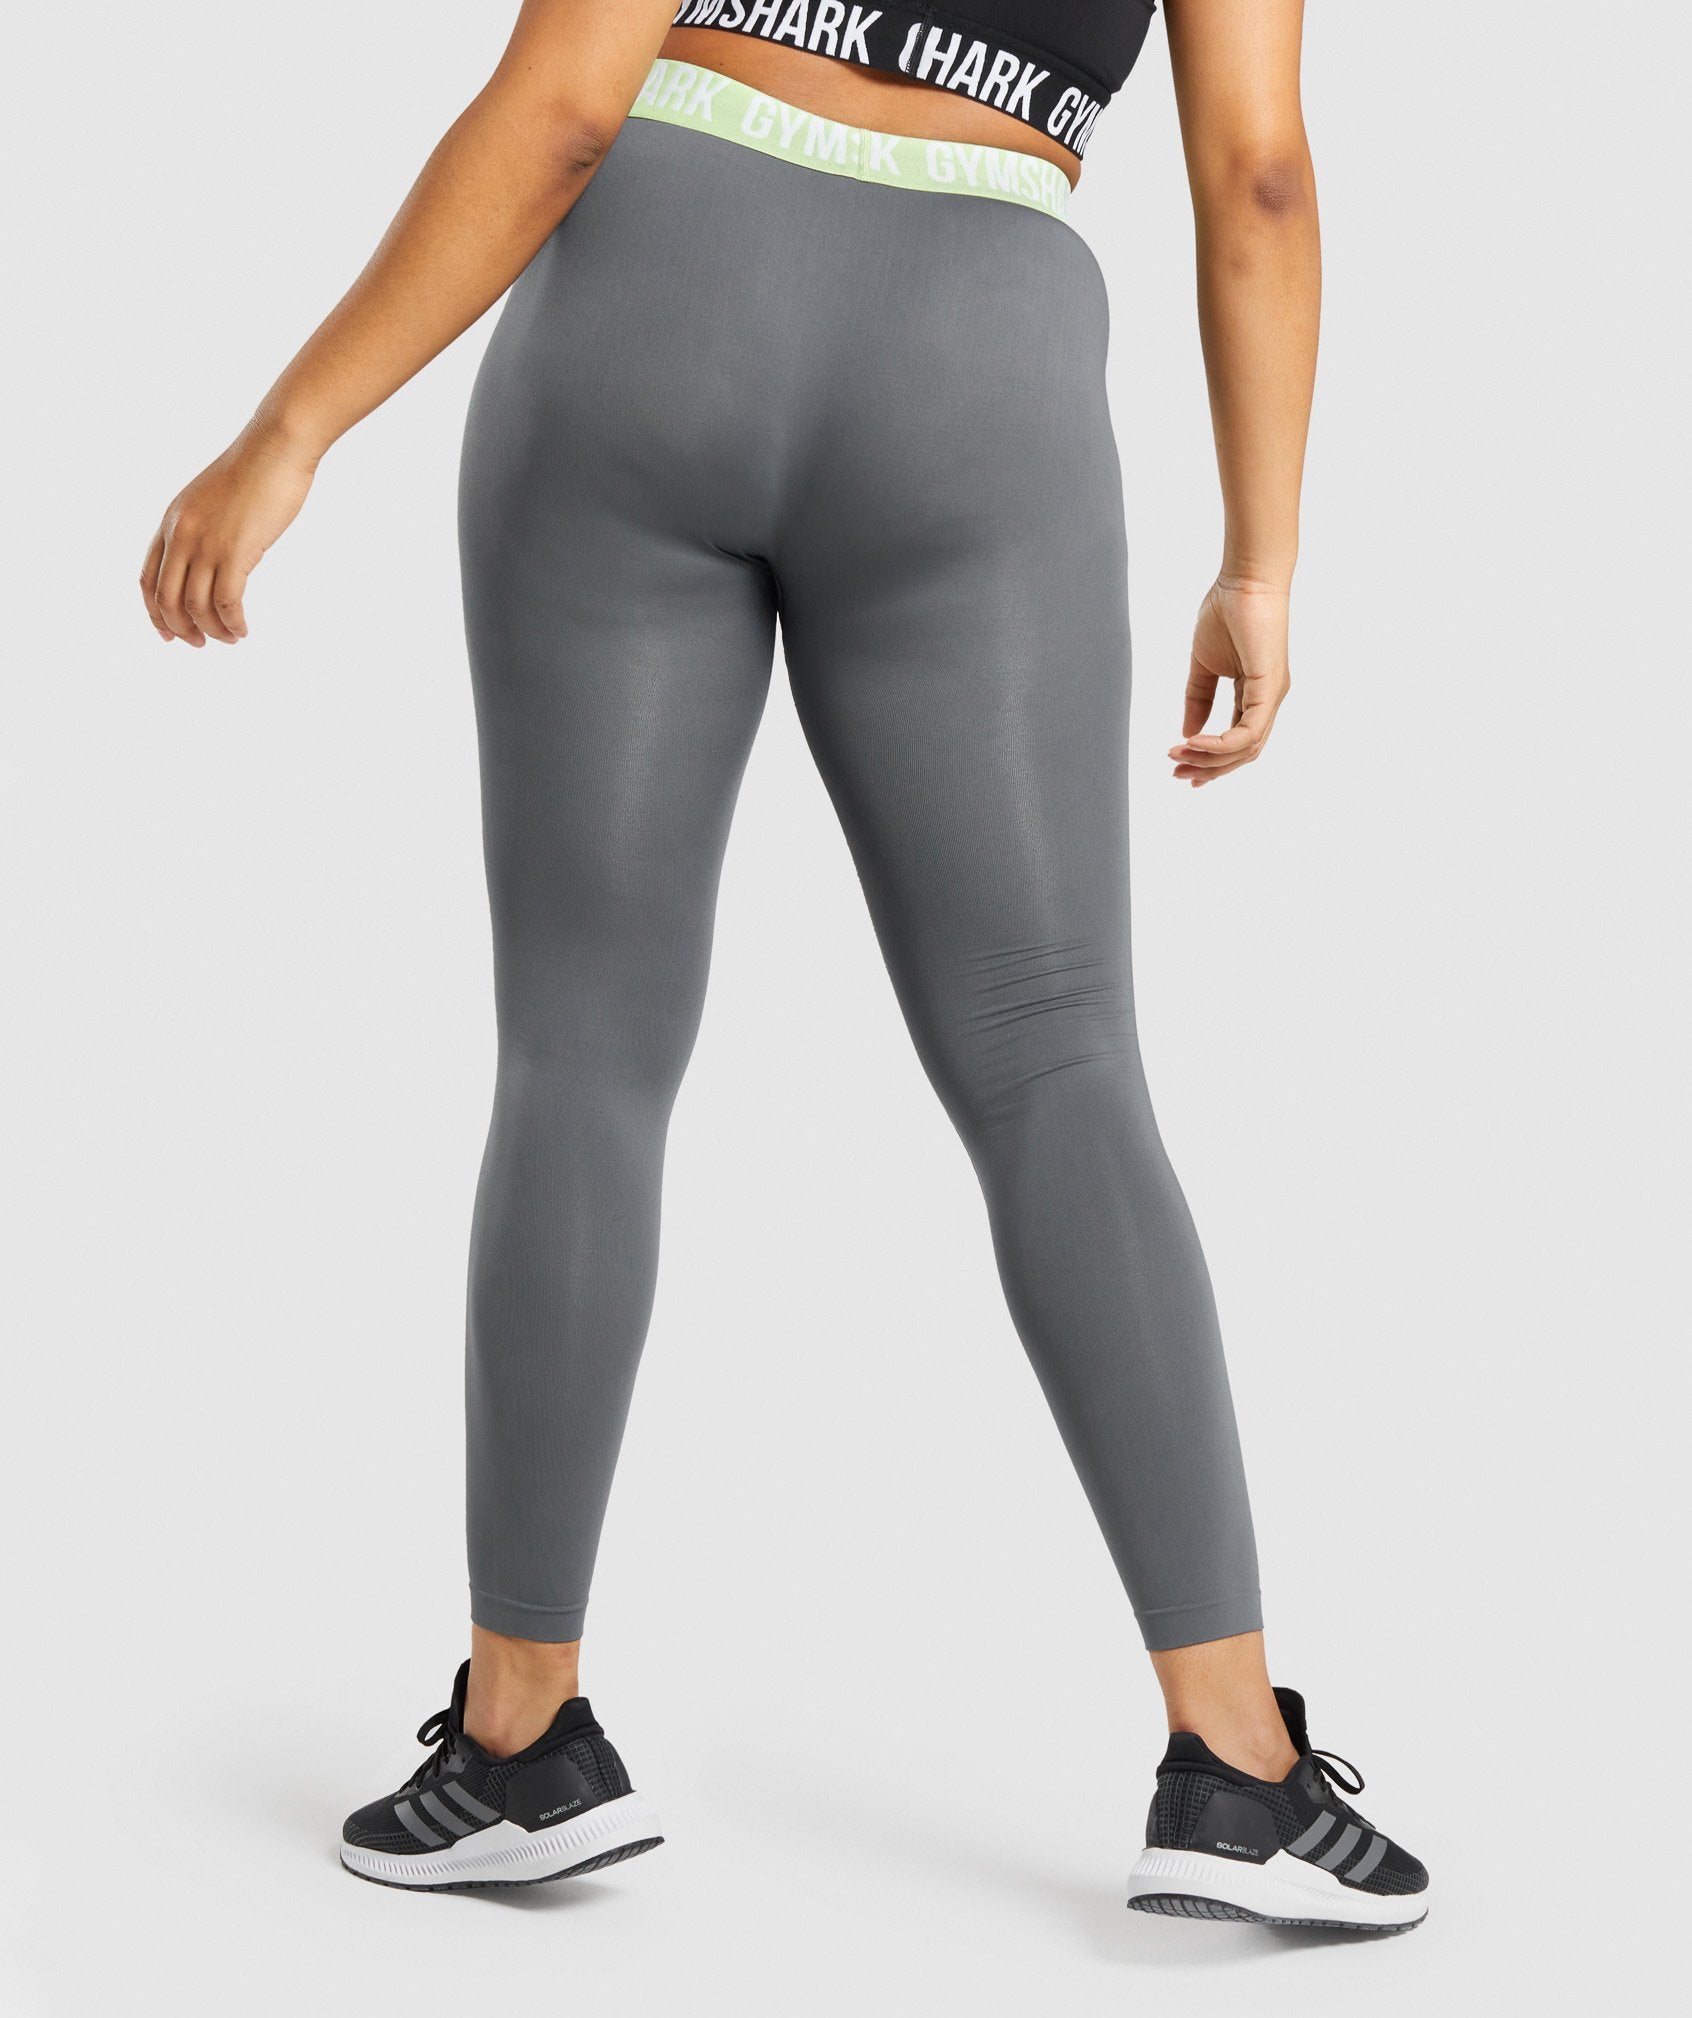 Women's Small Gymshark Leggings : r/gym_apparel_for_women